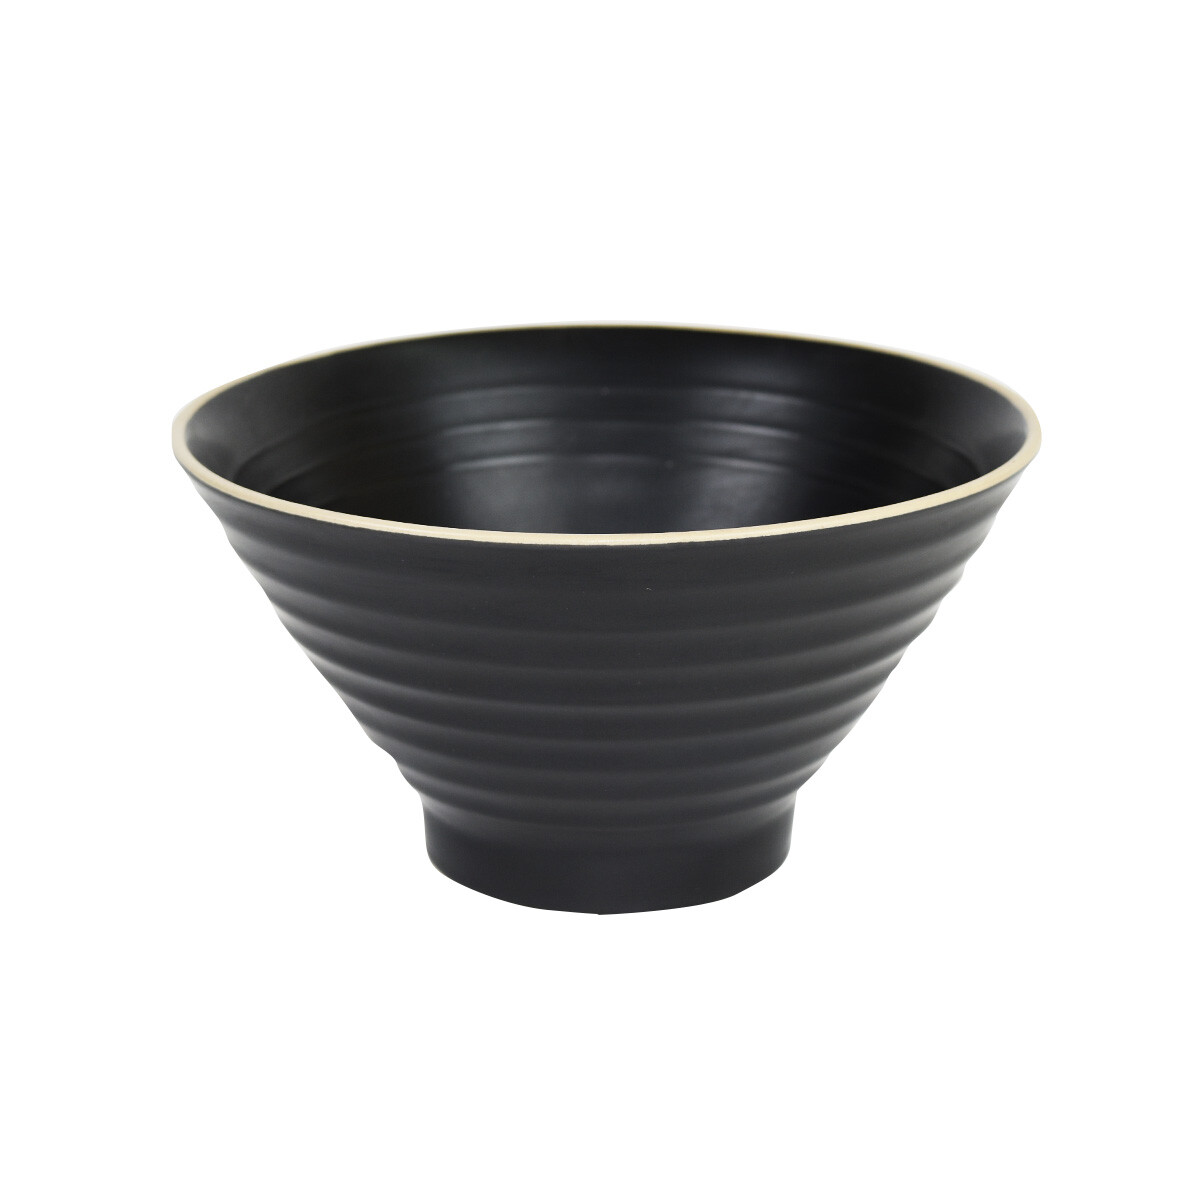 Bowl de ceramica conico 